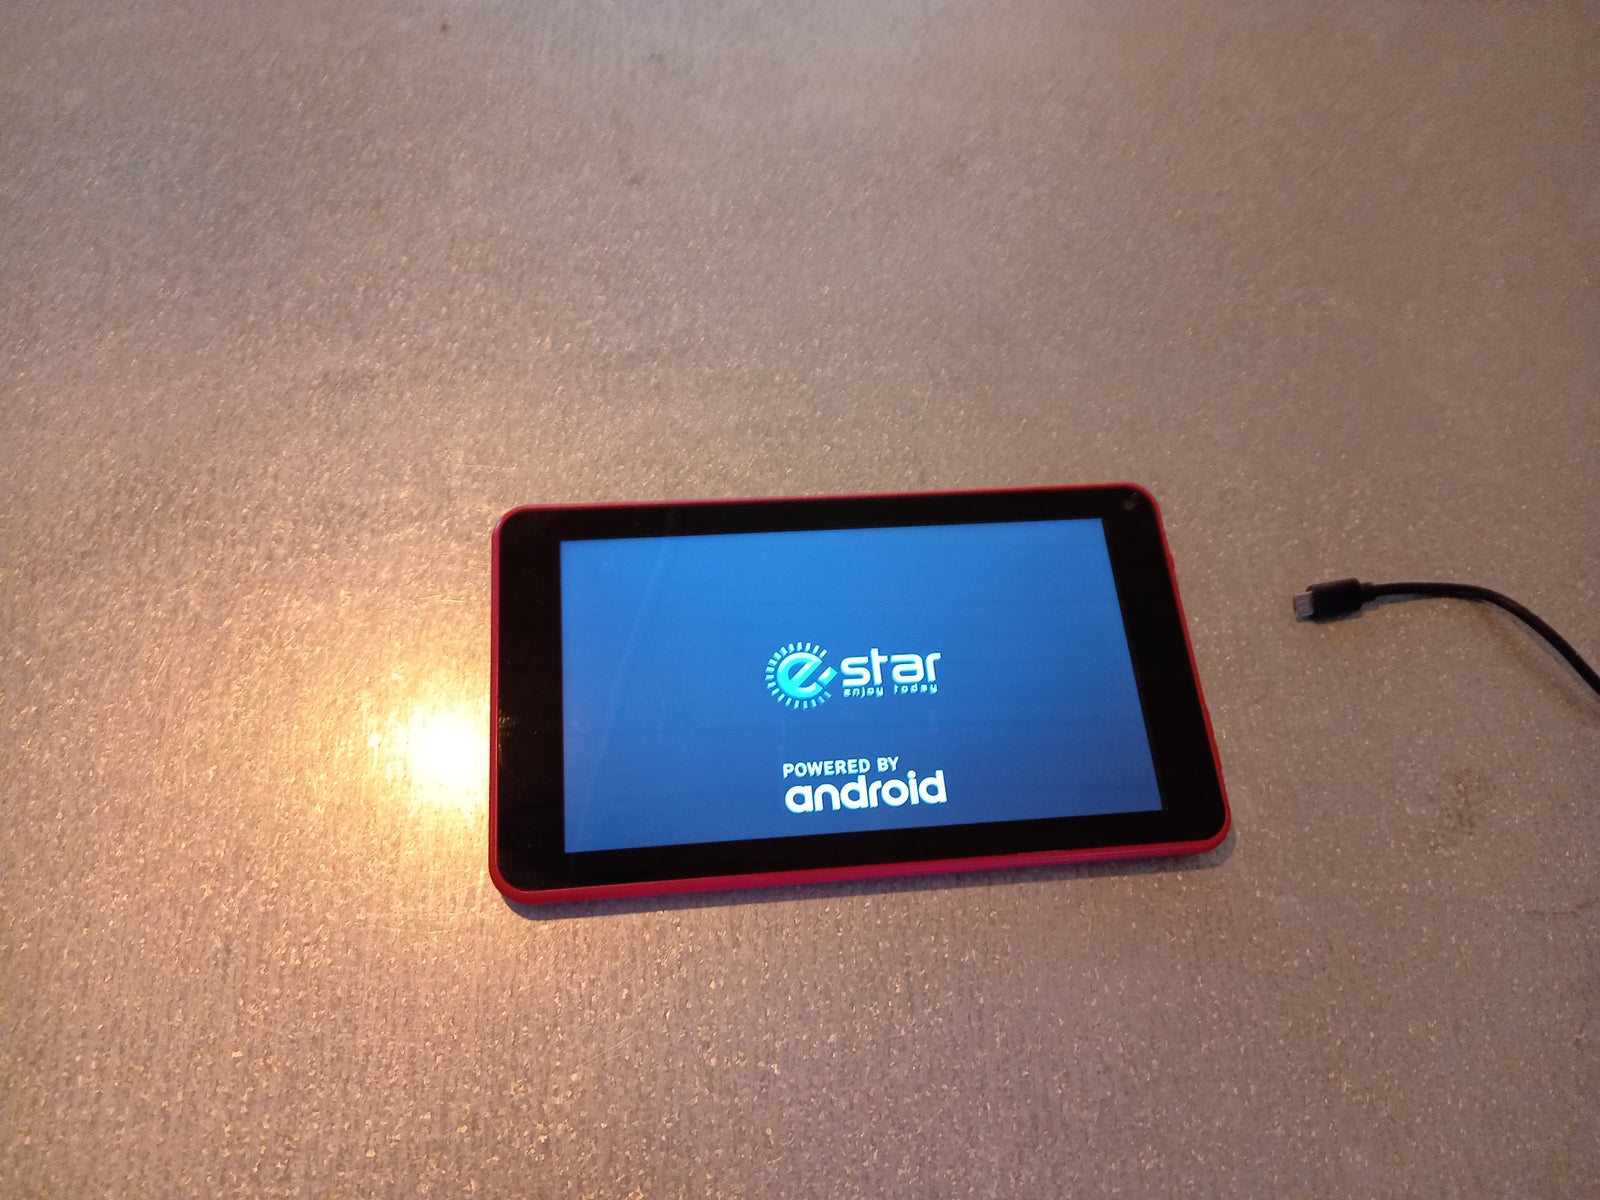 Andet mærke, e-star Android tablet, 7 tommer